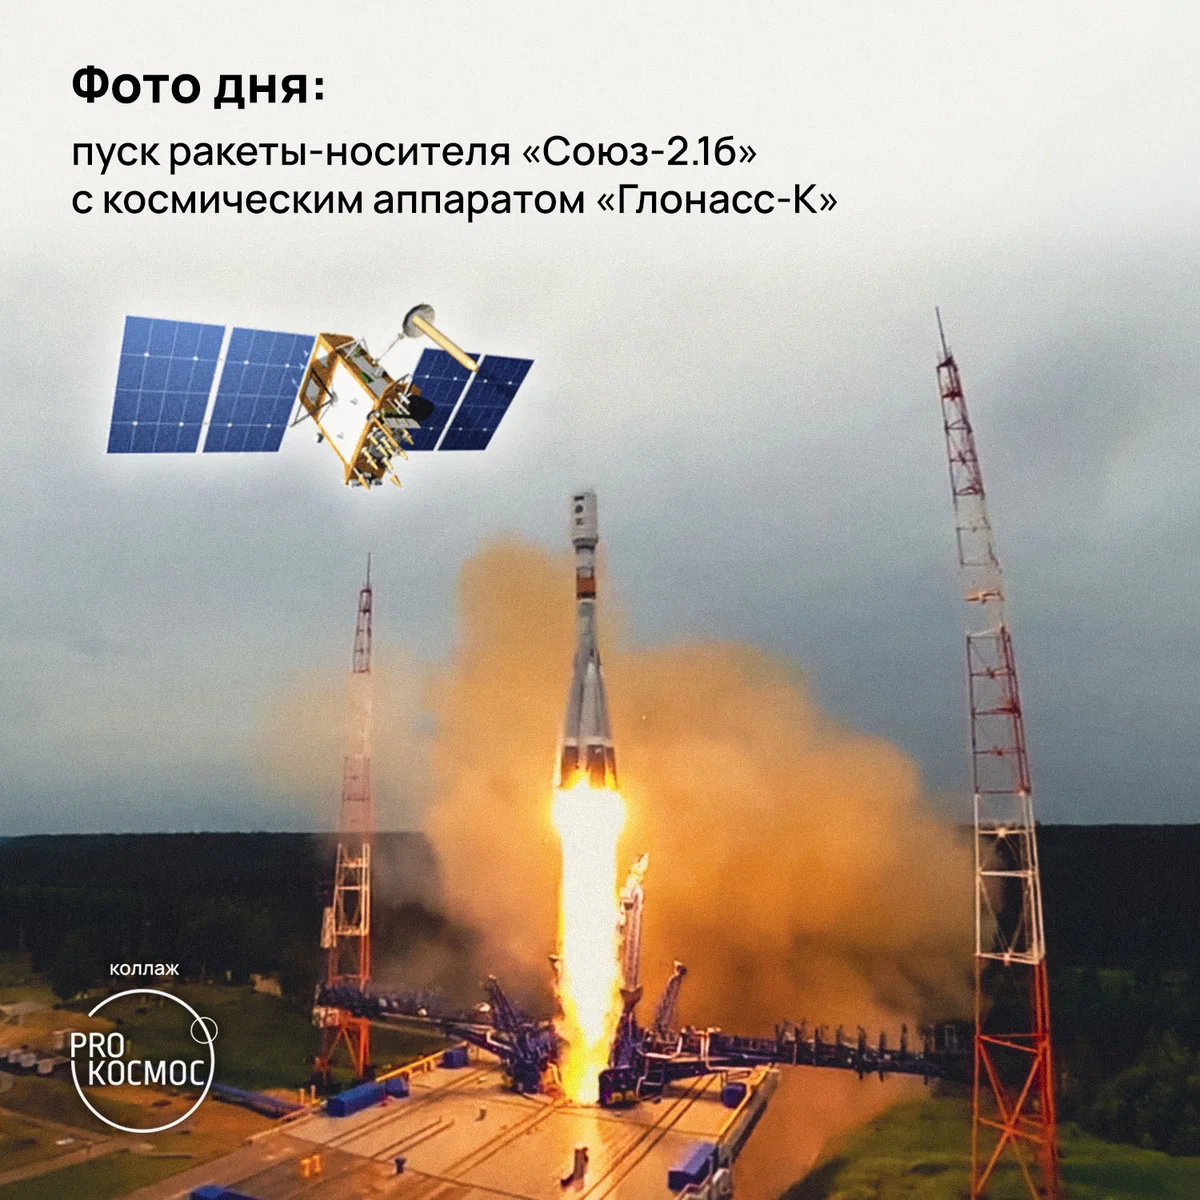 Фото дня: пуск ракеты-носителя «Союз-2.1б» с космическим аппаратом «Глонасс-К» height=1200px width=1200px